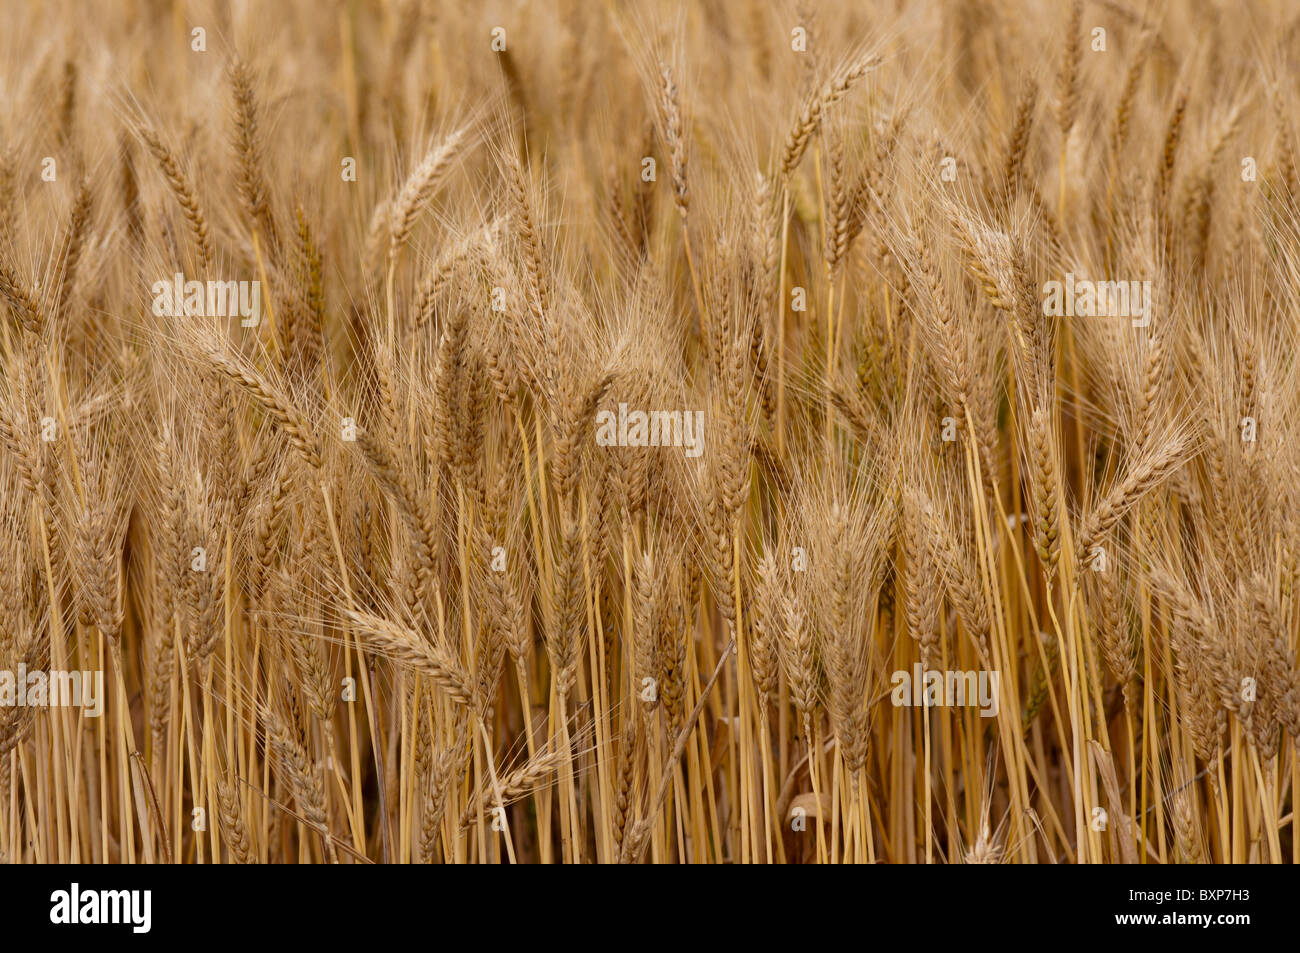 Ripening wheat Stock Photo